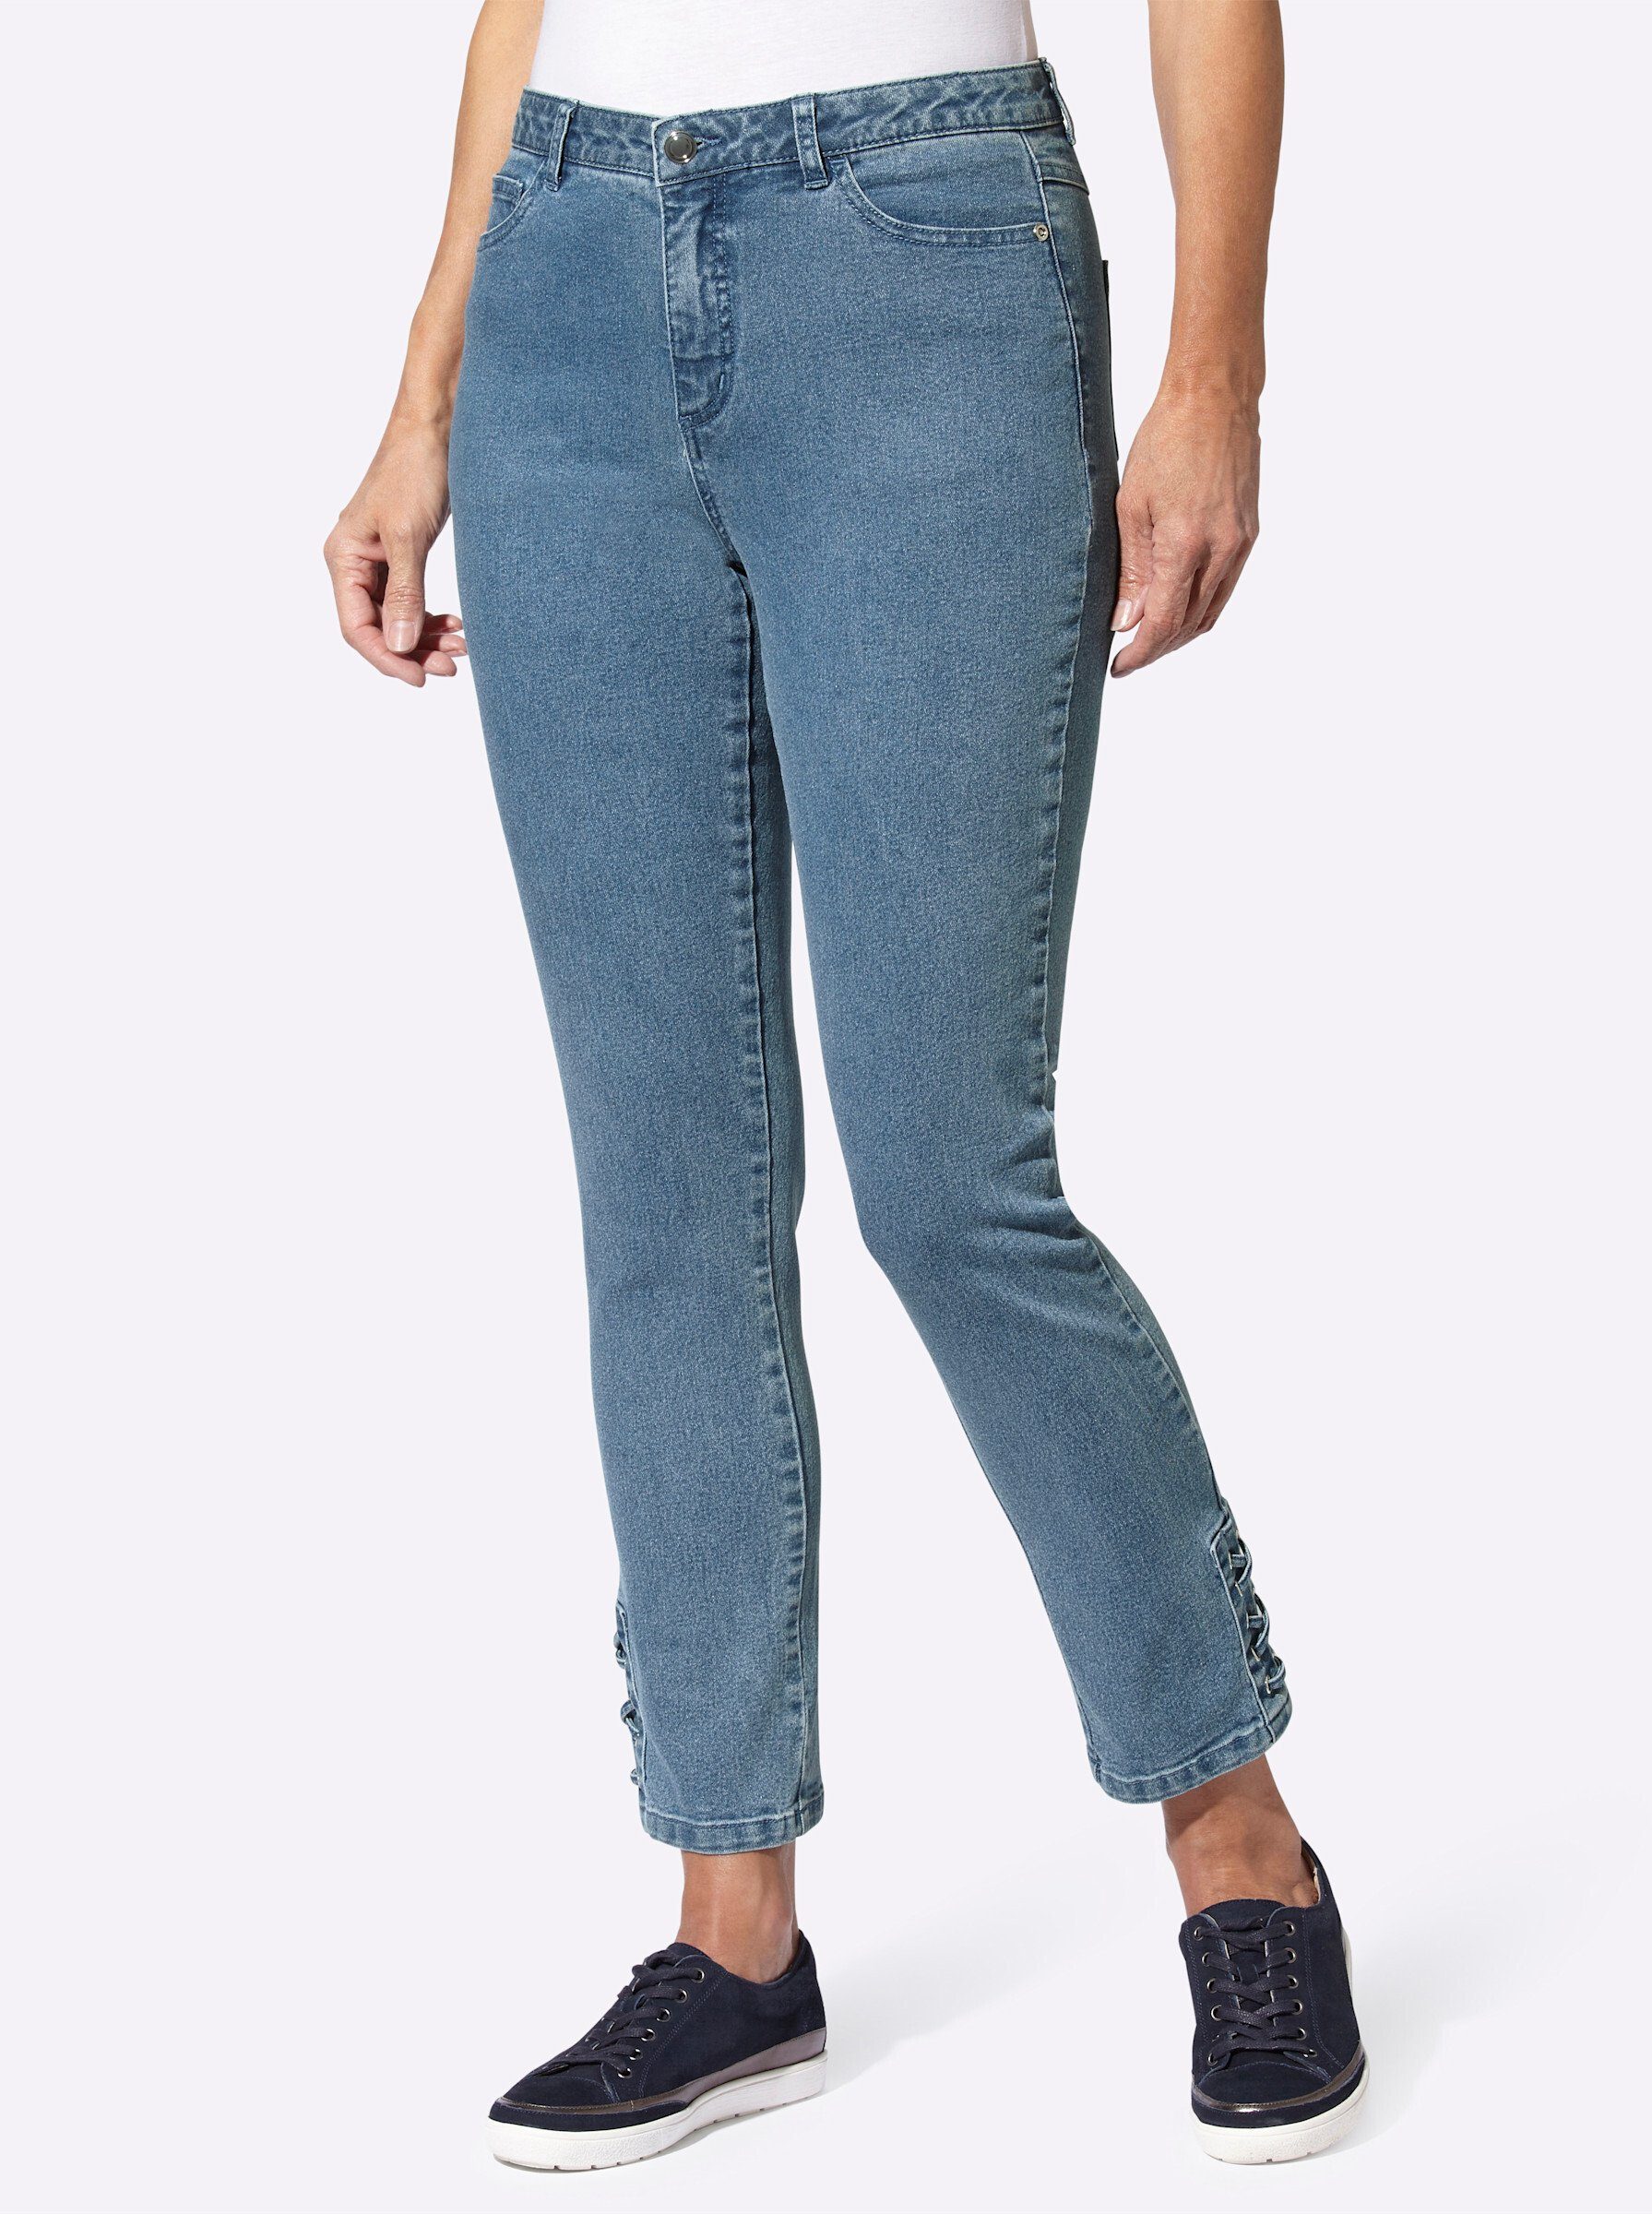 Witt Jerseyhose Jeans Innenbeinlänge ca. 66 cm